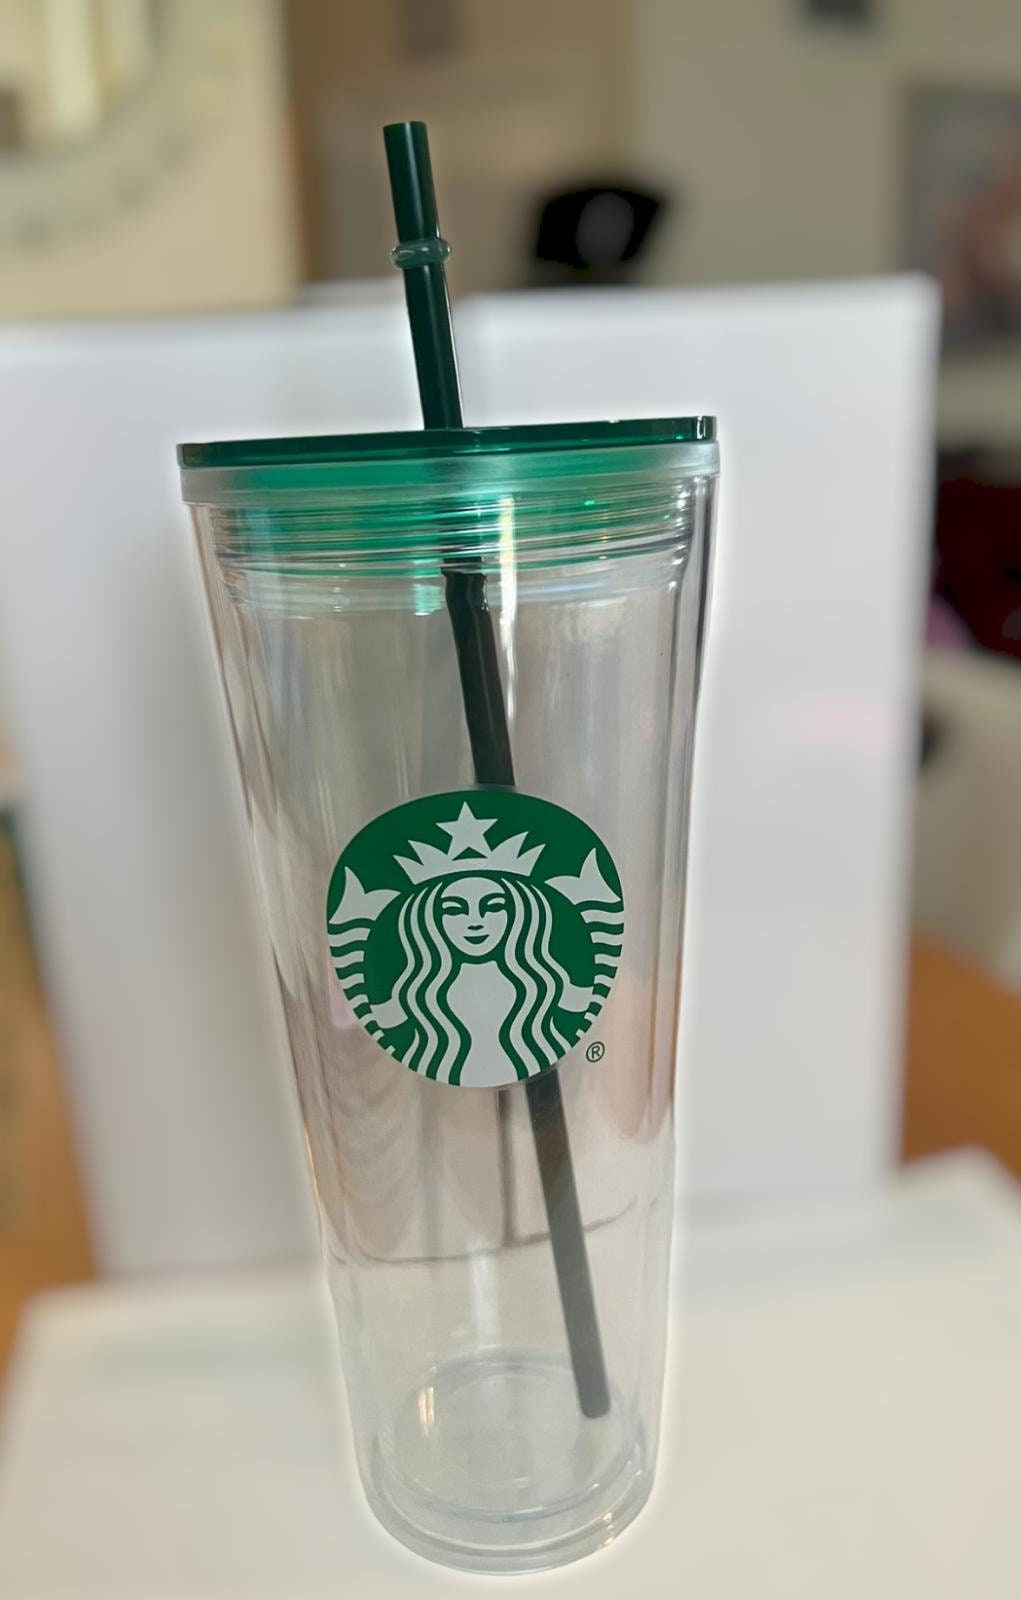 Gobelet Starbucks PNG transparents - StickPNG